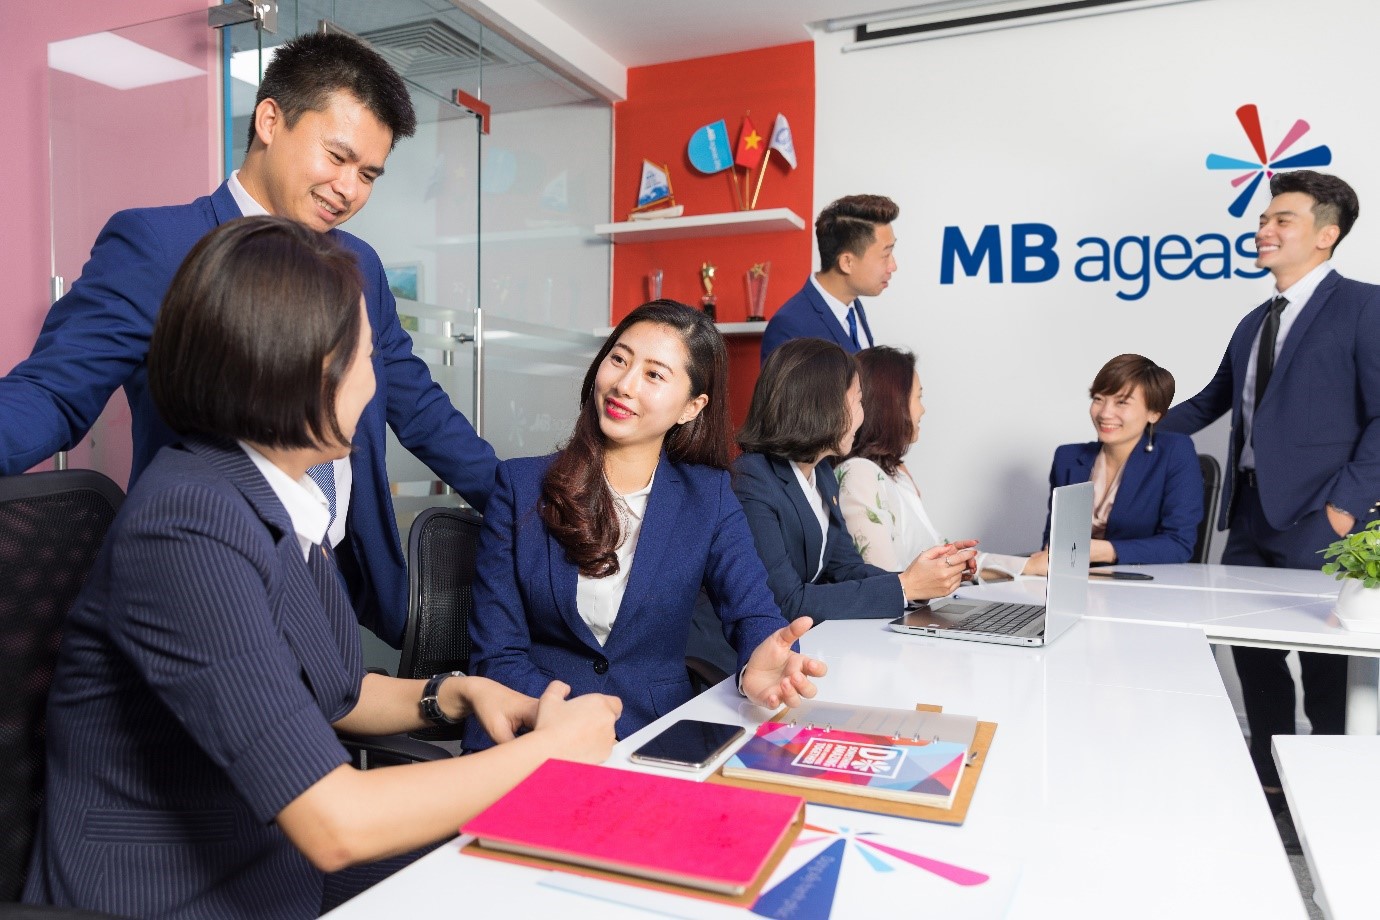 MB Ageas Life được đánh giá là doanh nghiệp bảo hiểm nhân thọ tăng trưởng nhanh nhất năm 2019 do Tạp chí International Finance bình chọn.